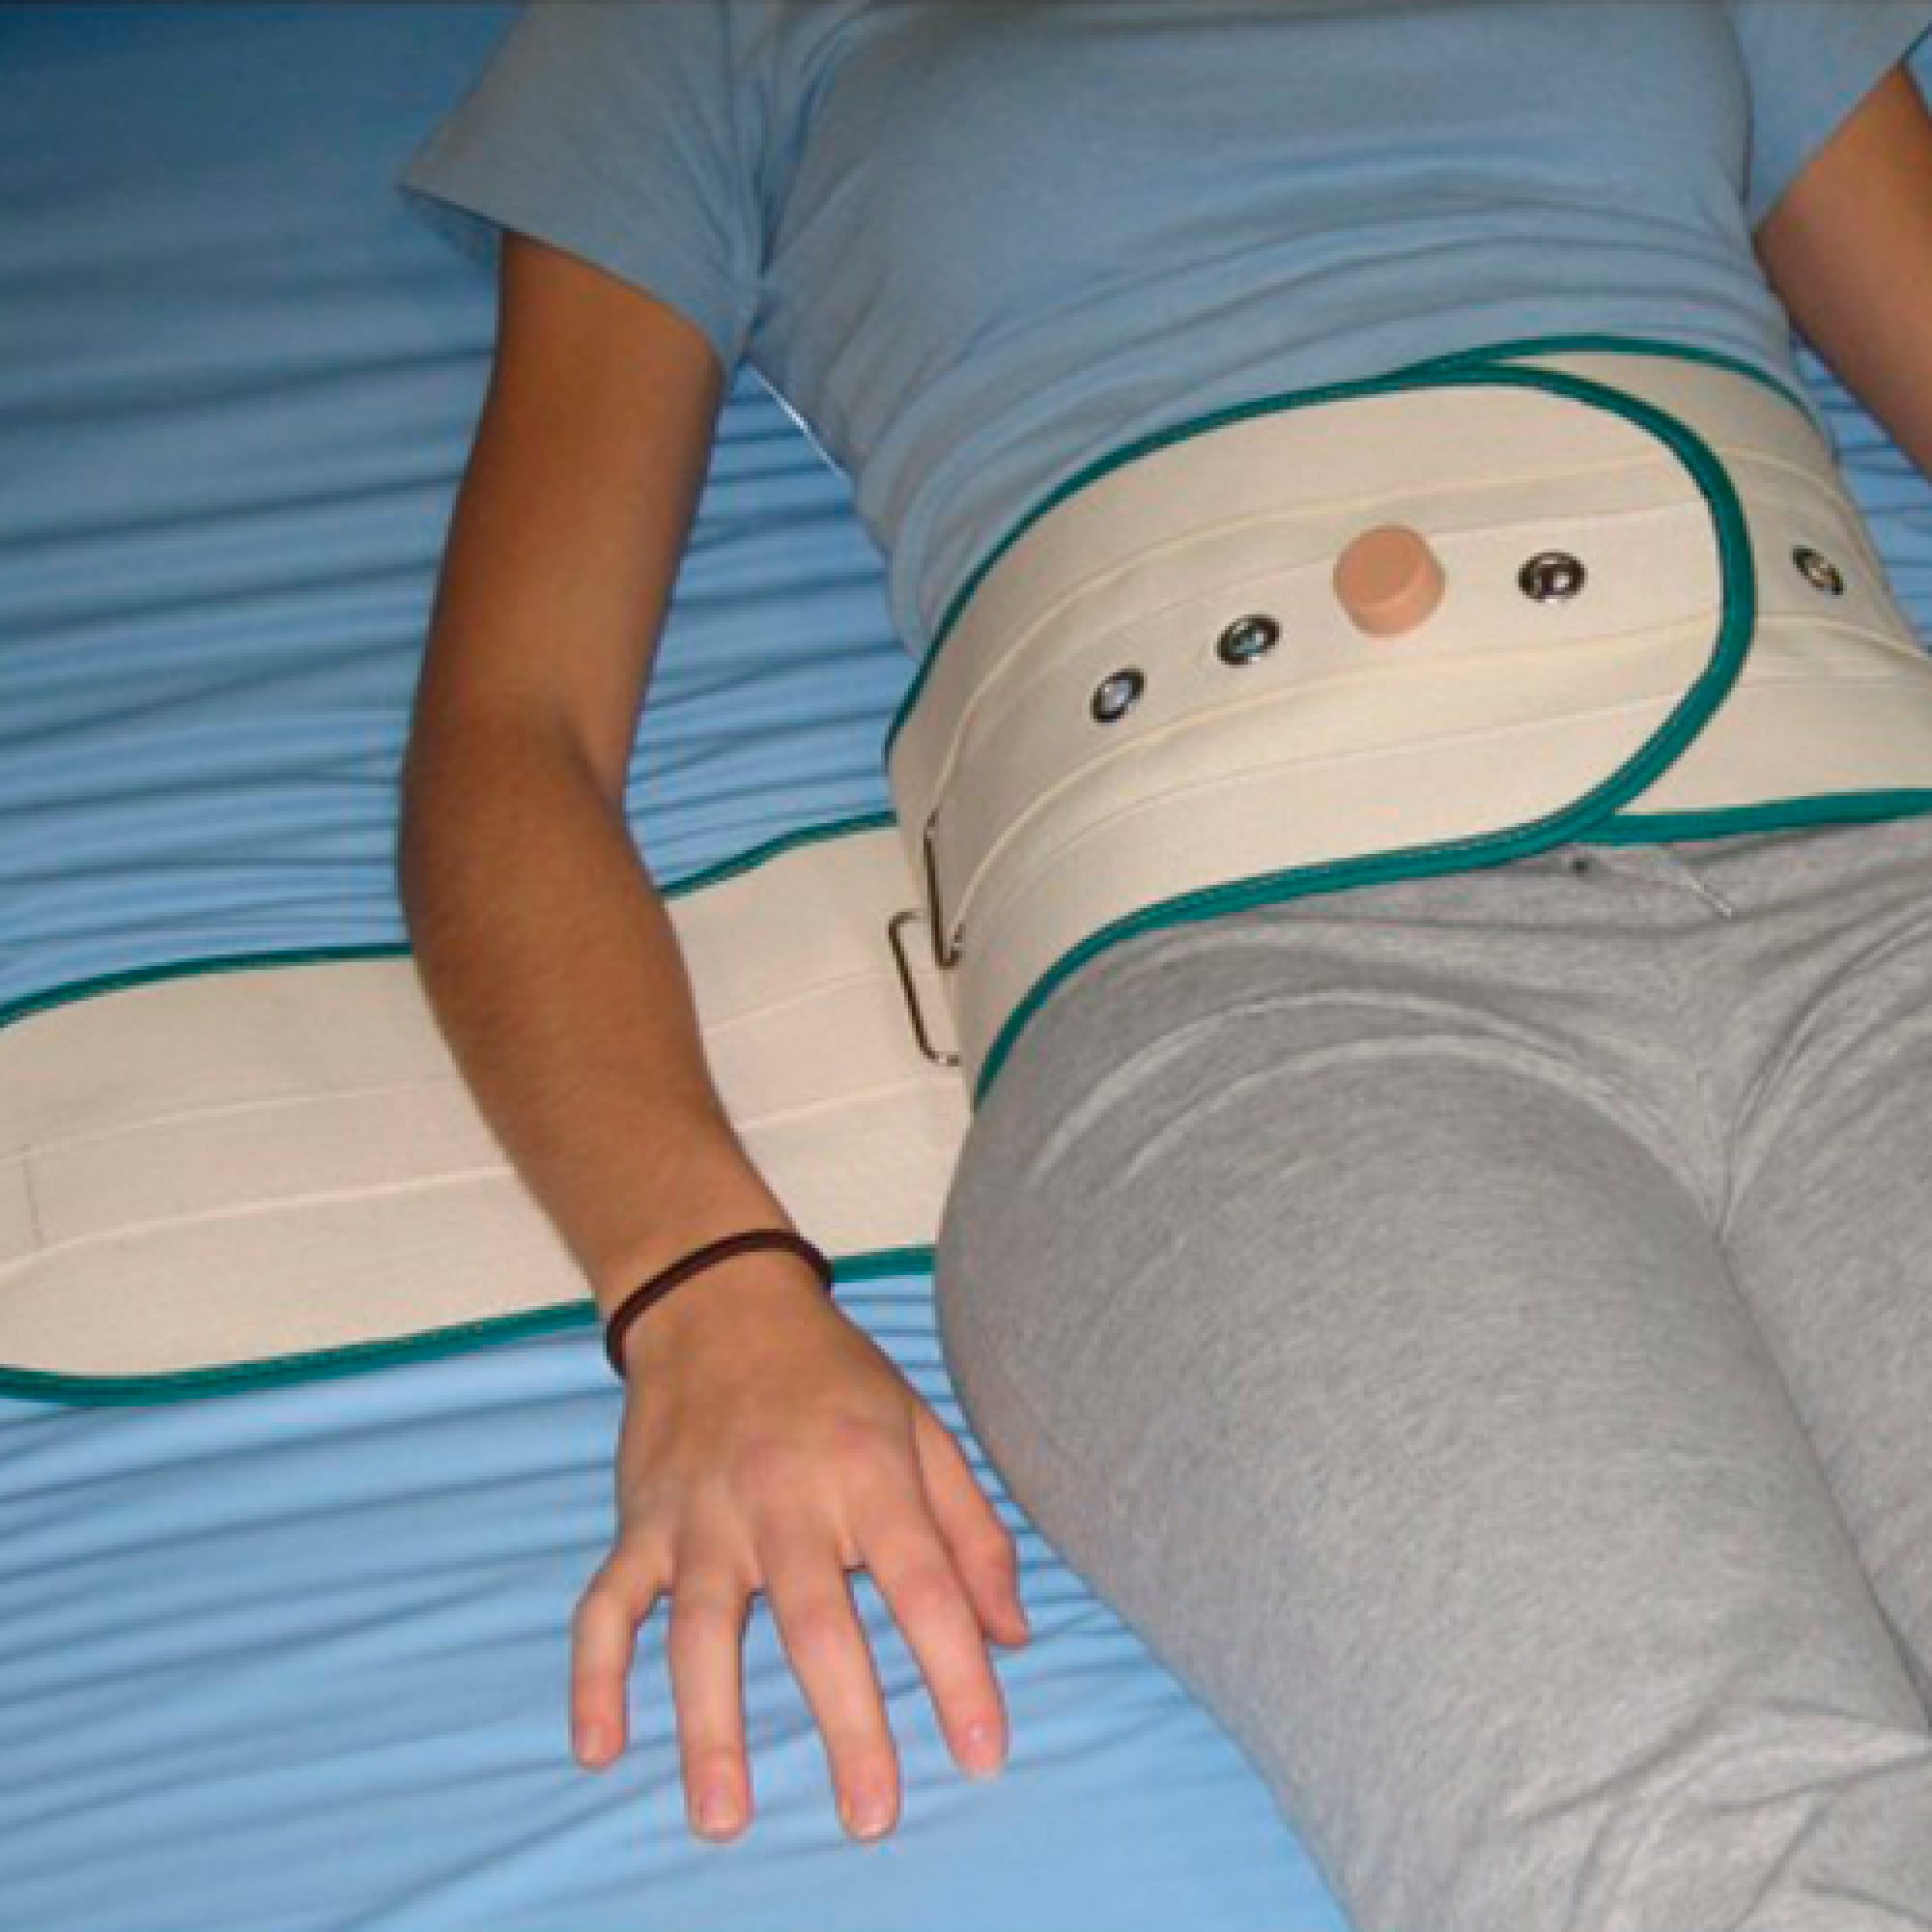 cinturon abdominal para cama de personas dependientes